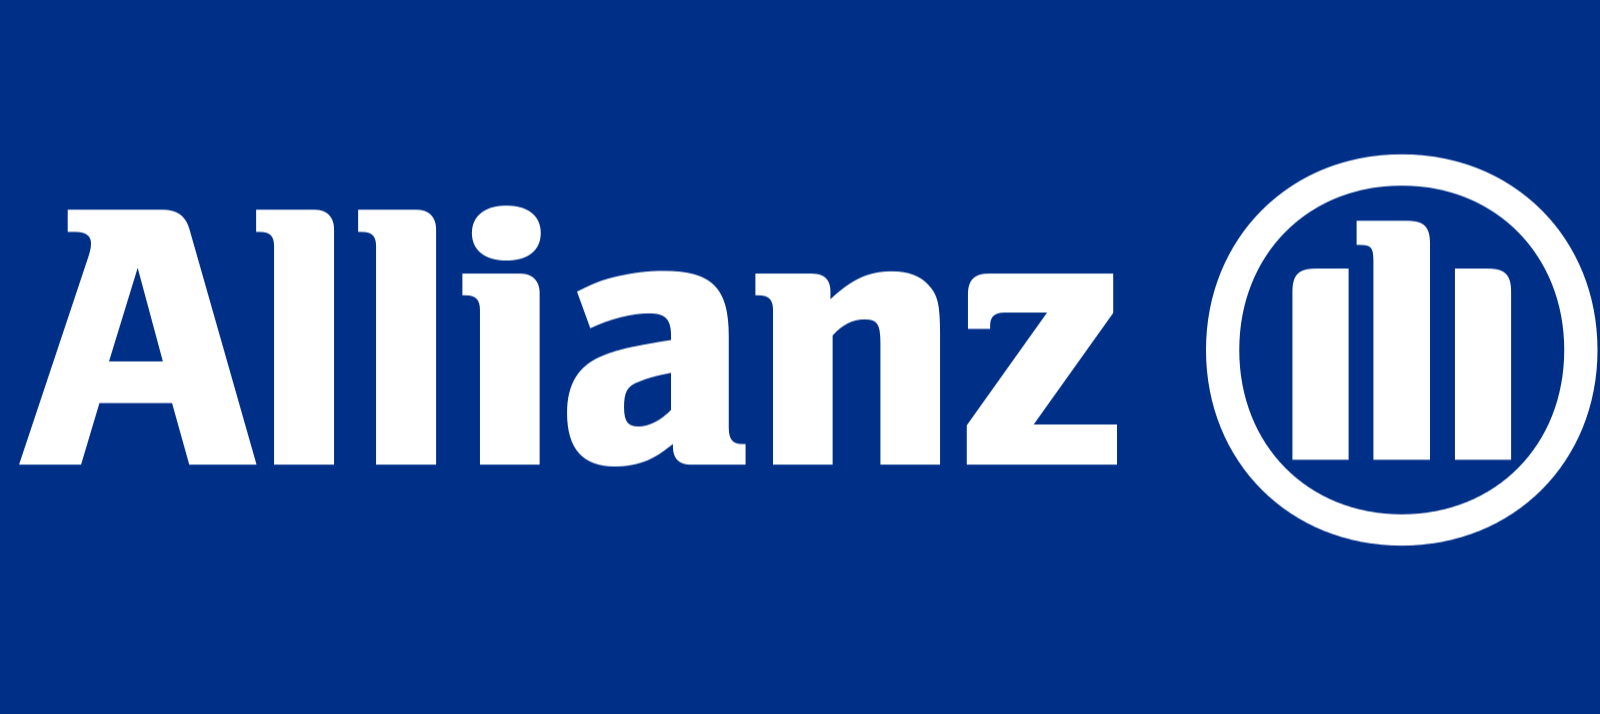 Az MNB 61 millióra bírságolta az Allianz Hungária Biztosítót - VG cikk